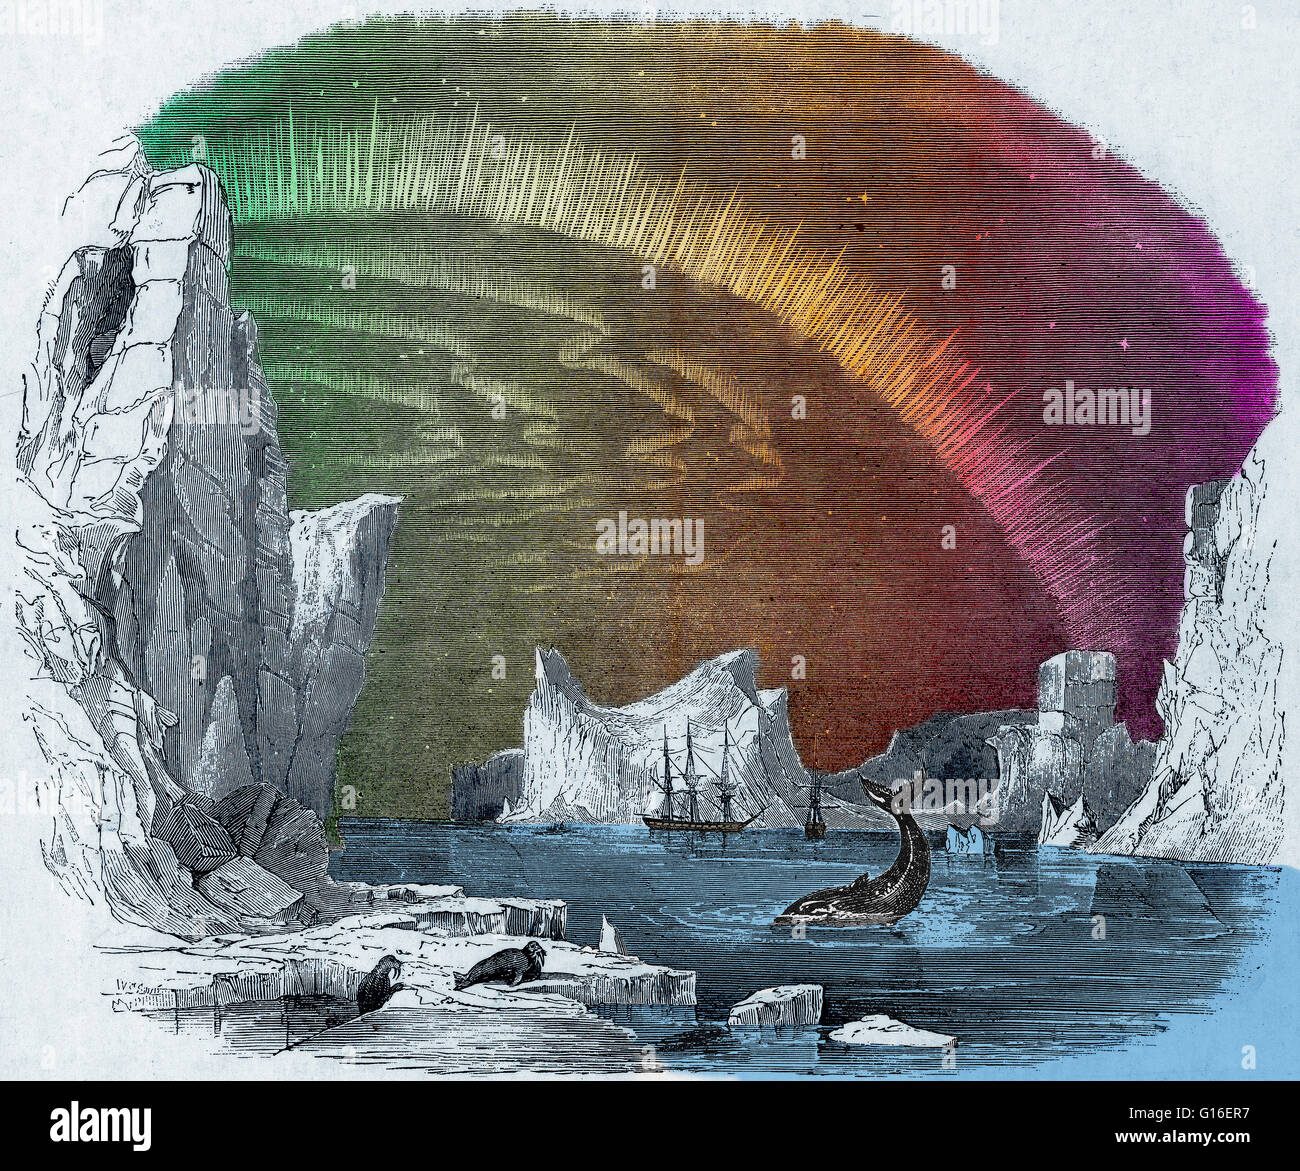 Immagine colorato di iceberg e l'Aurora Boreale, da ottobre 1849. Questa immagine è stata pubblicata nel Illustrated London News per accompagnare un articolo su una ricerca di Sir John Franklin's perso la spedizione artica. John Franklin (1786-1847) era un britannico Foto Stock